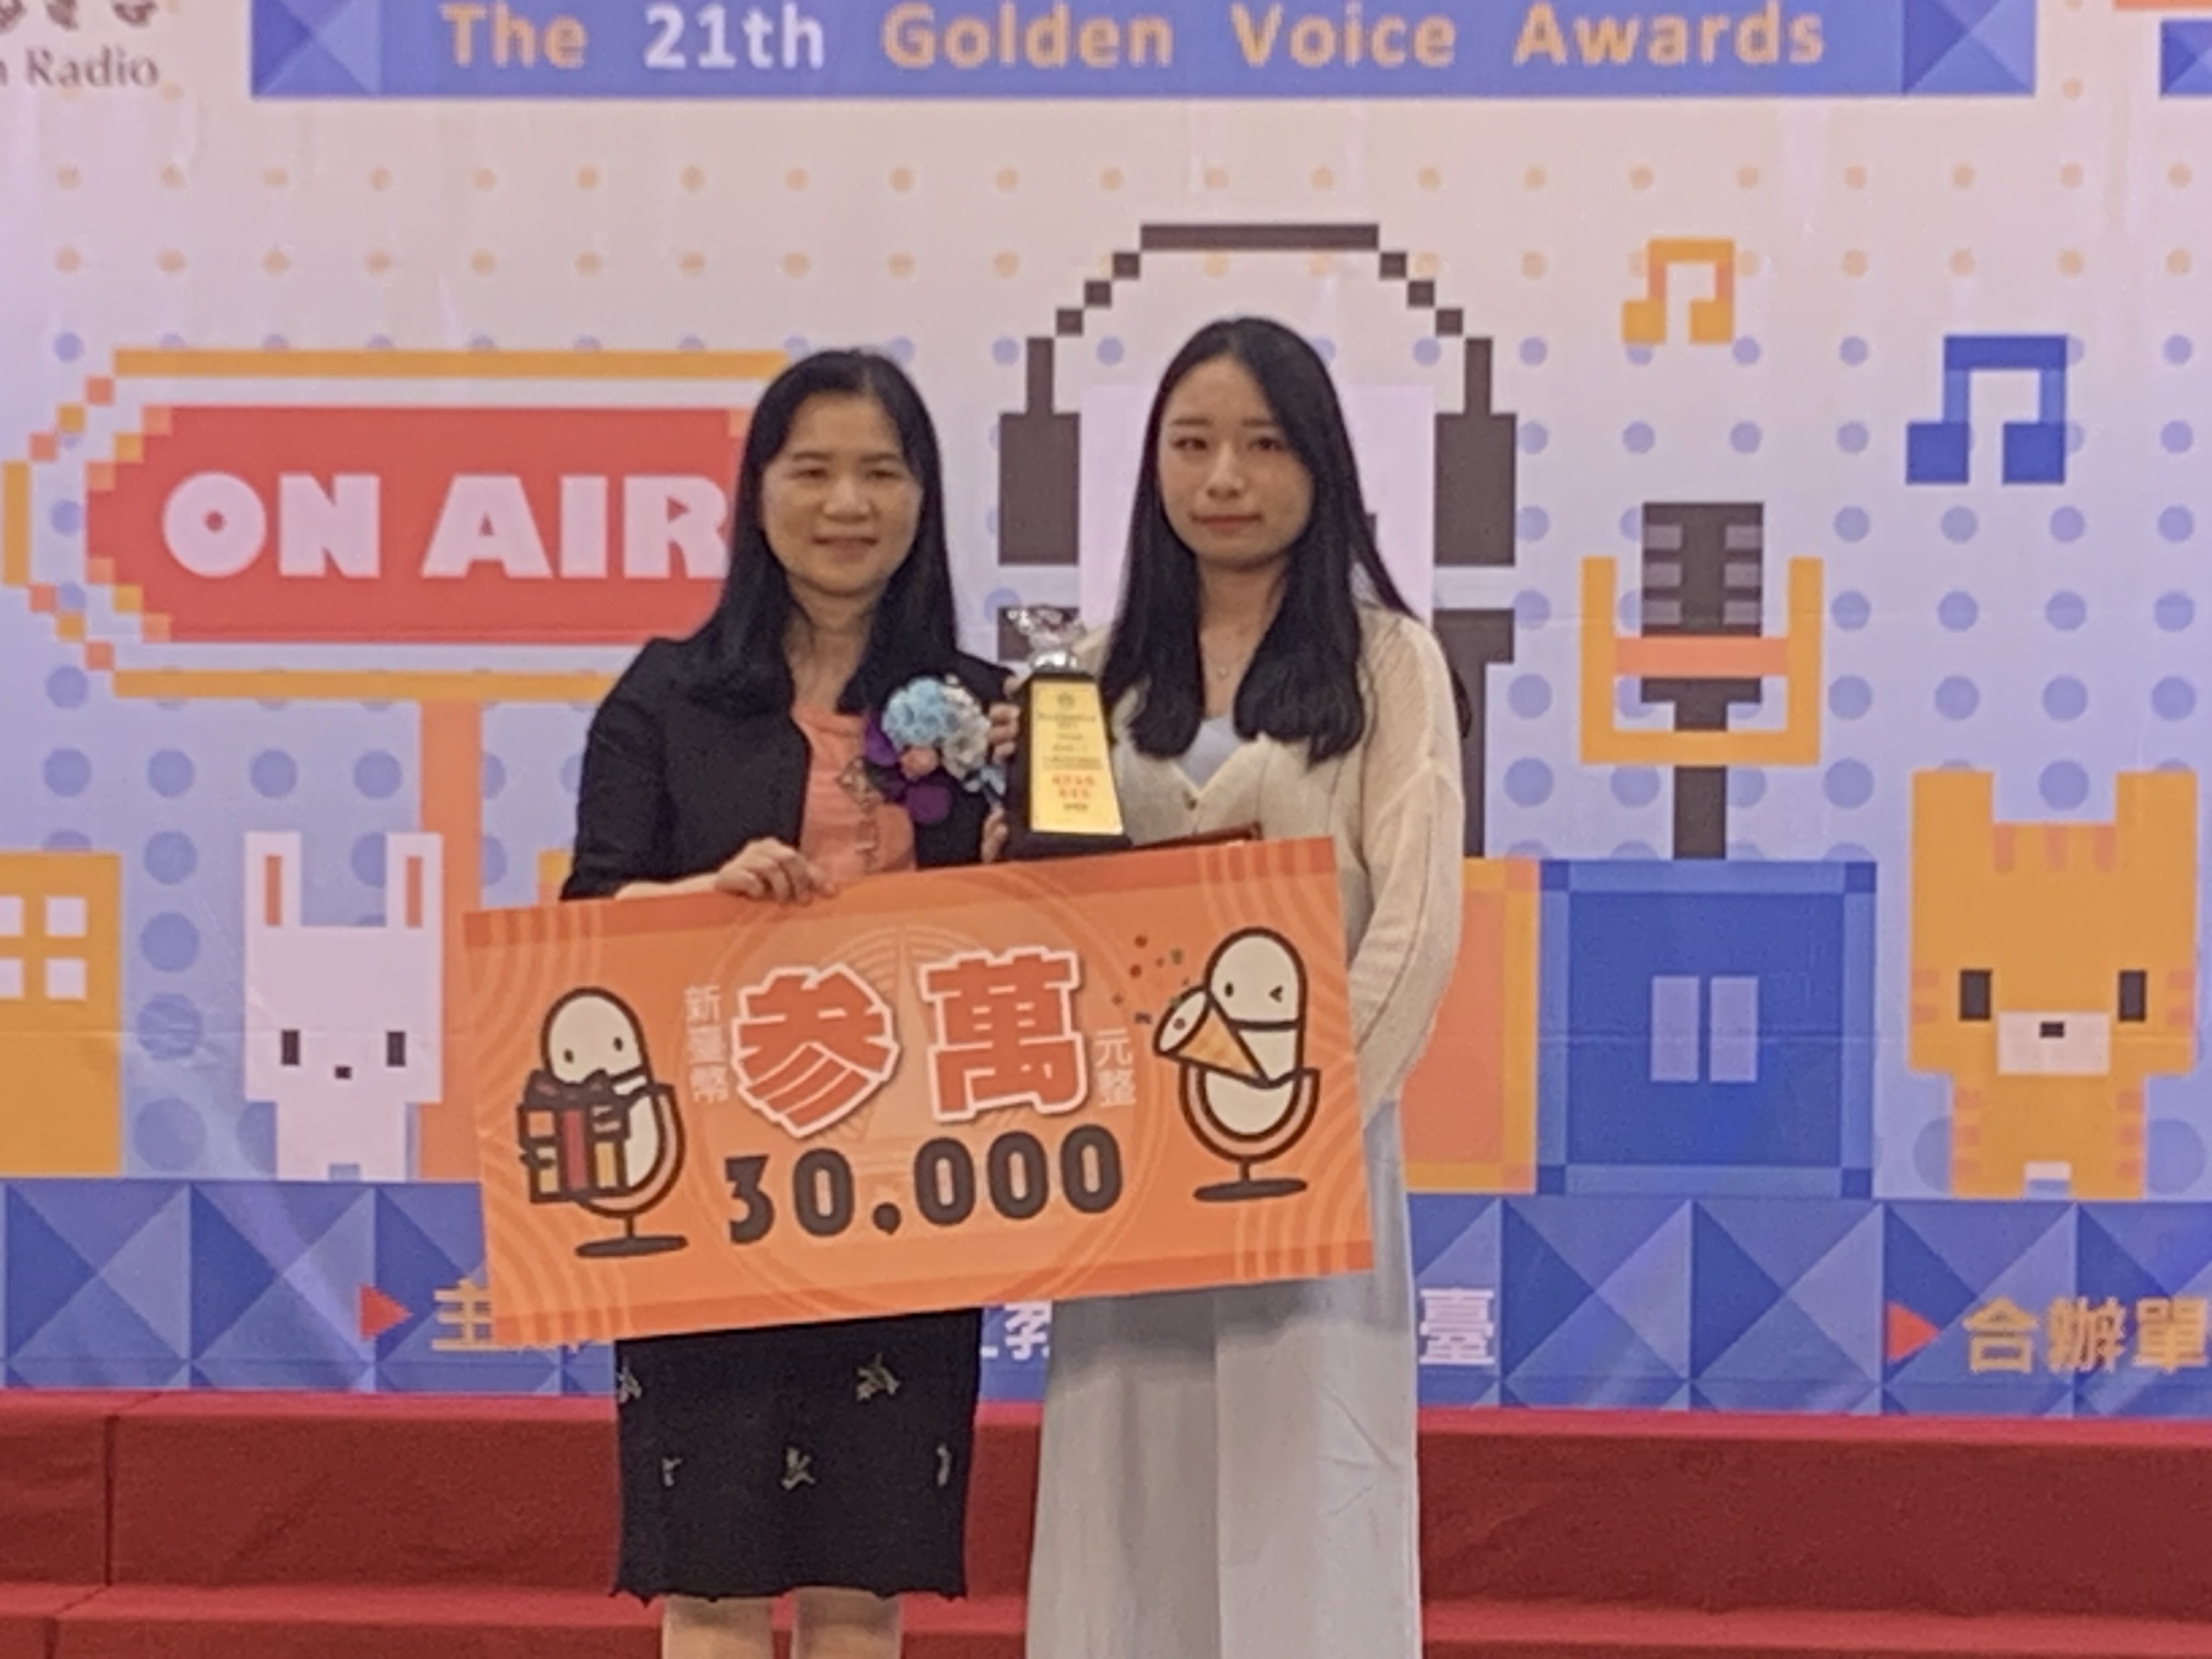 教育部終身教育司李毓娟司長(左)頒發獎項給獲獎同學